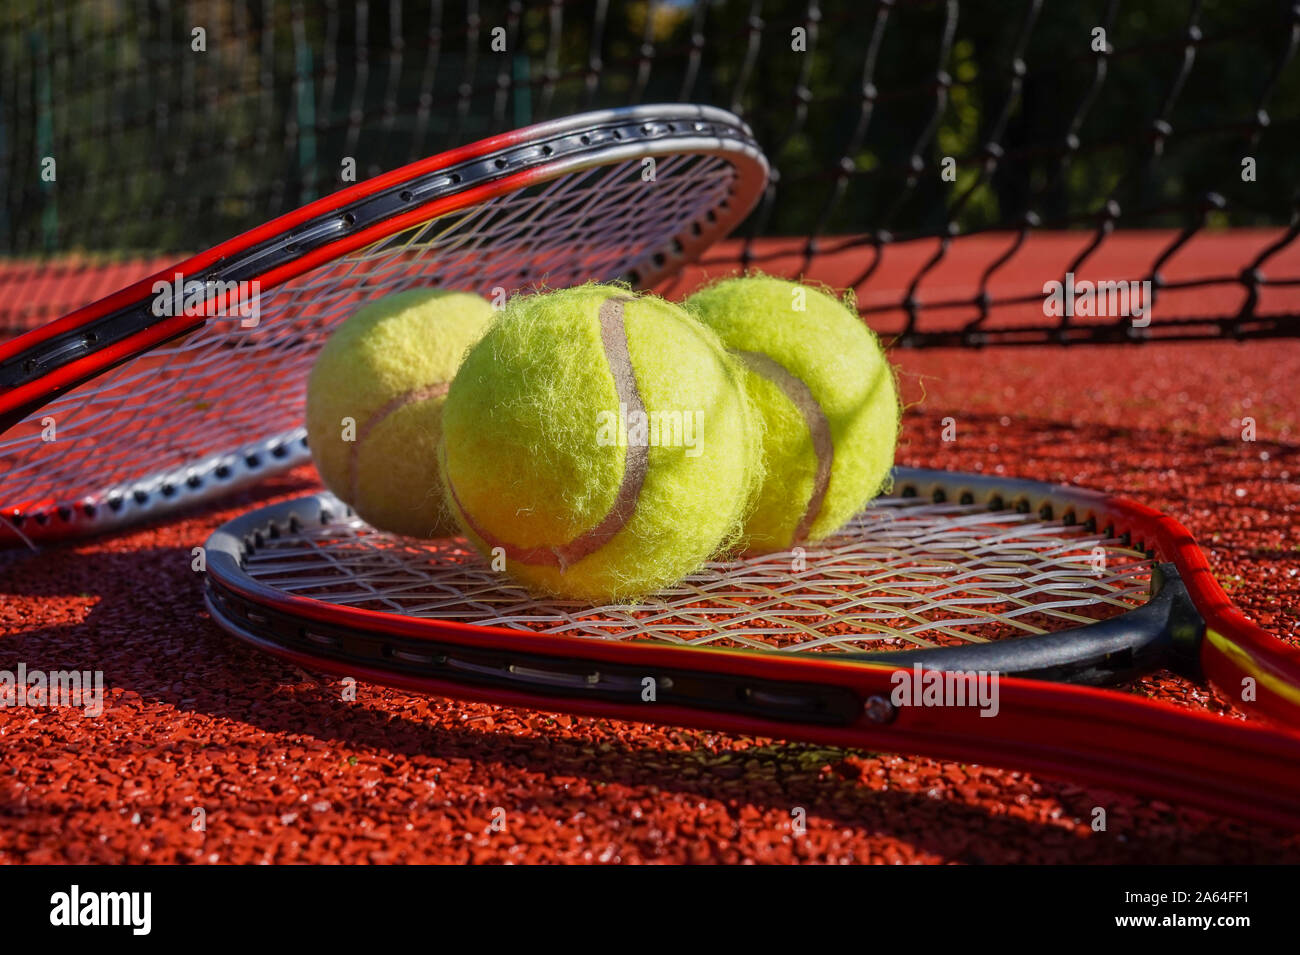 Scène de tennis avec filet noir d'ombre, des balles de tennis reposant sur une raquette de tennis sur surface dur rouge, low angle view, selective focus Banque D'Images